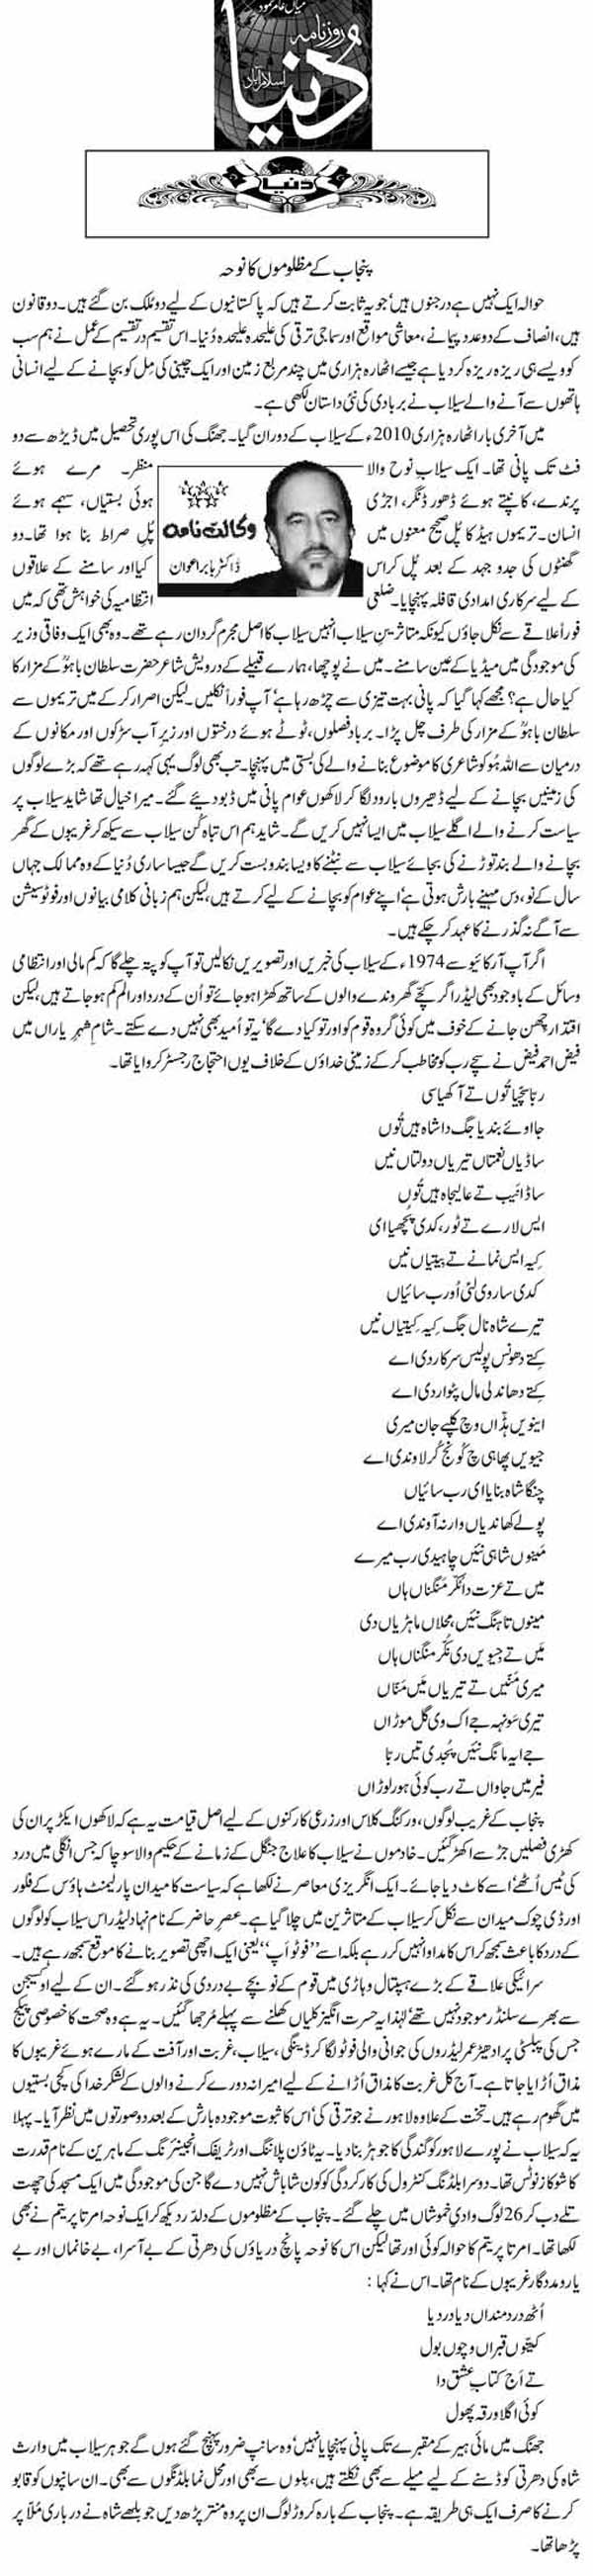 Minhaj-ul-Quran  Print Media Coverage Daily Dunya (Article) Dr Babar Awan